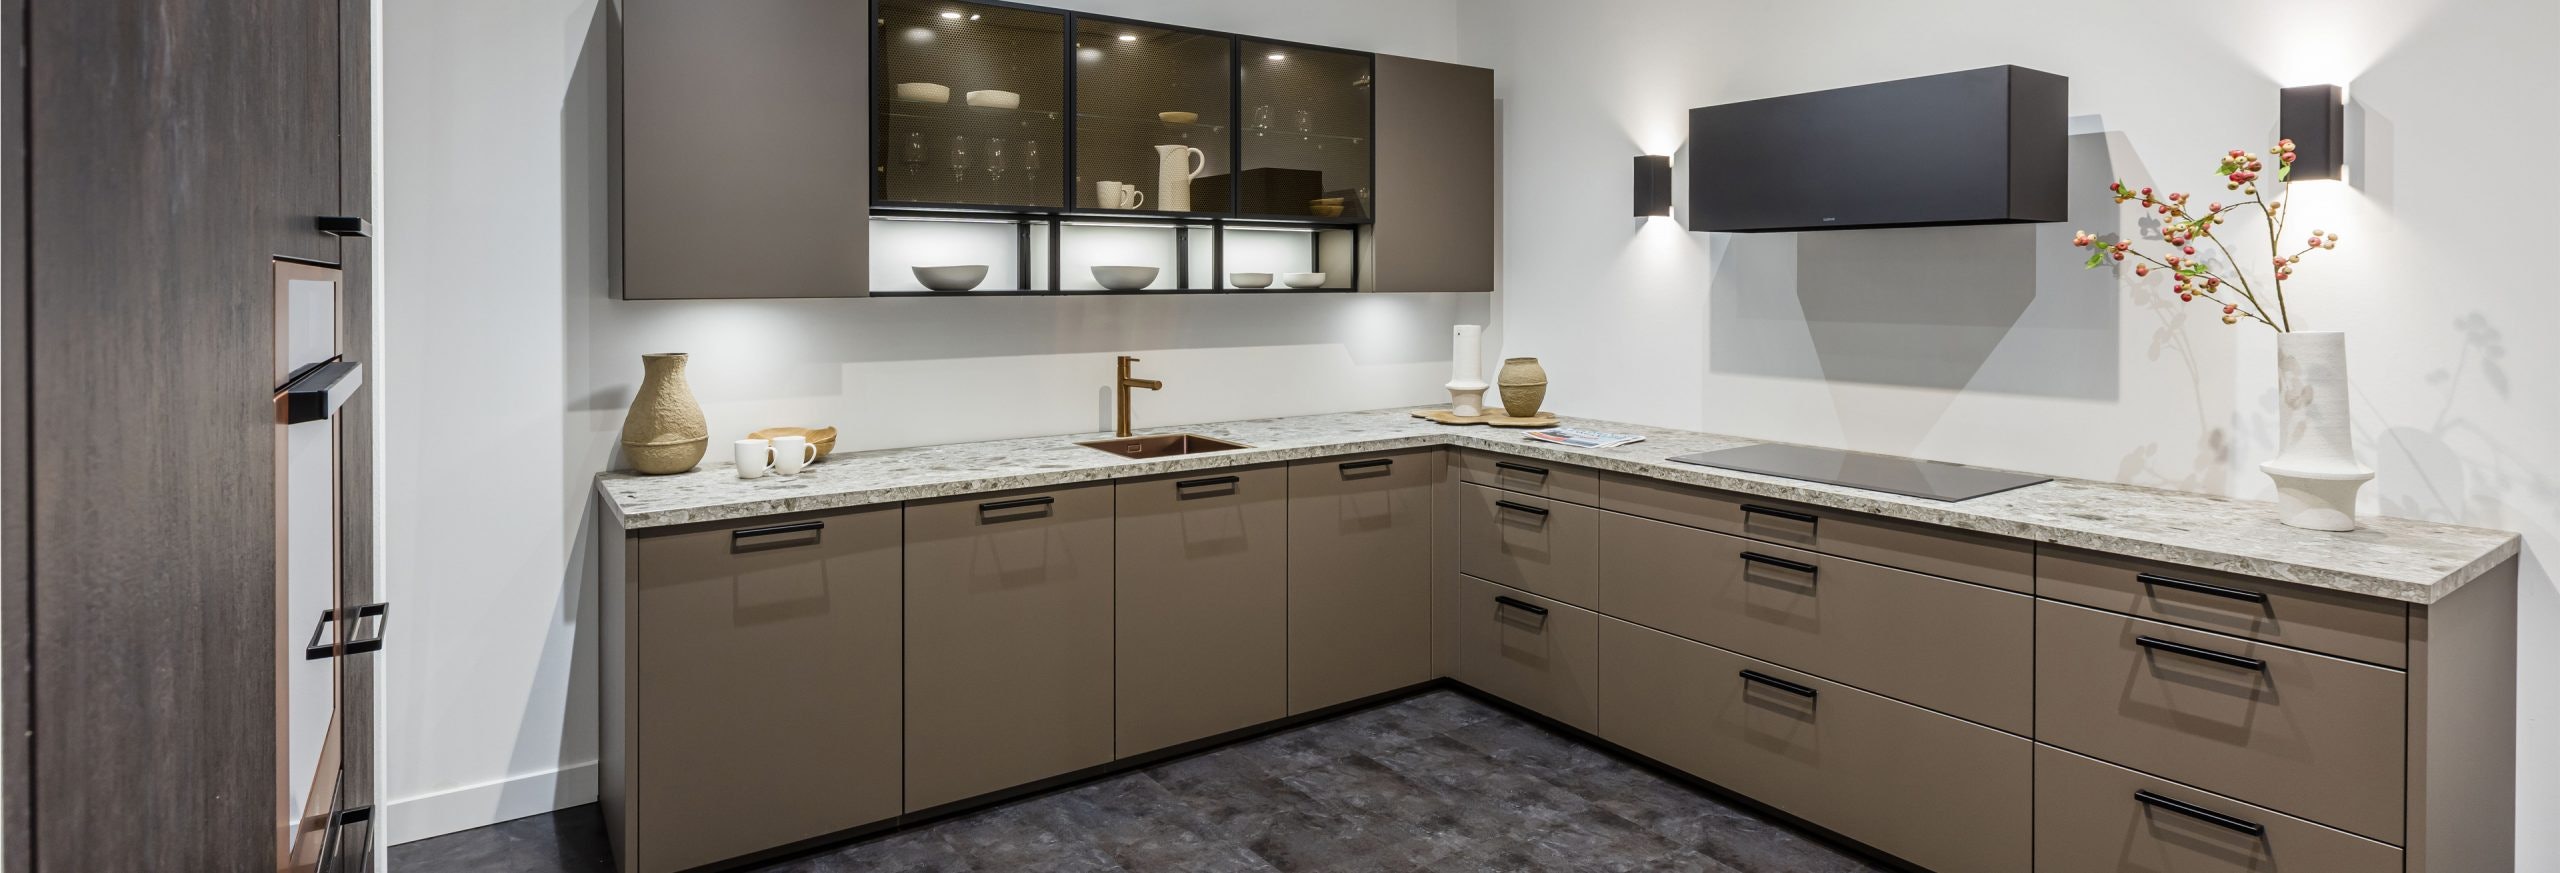 Keuken 1400220 - Trendy industriële bruine hoekkeuken met stijlvolle bovenkasten